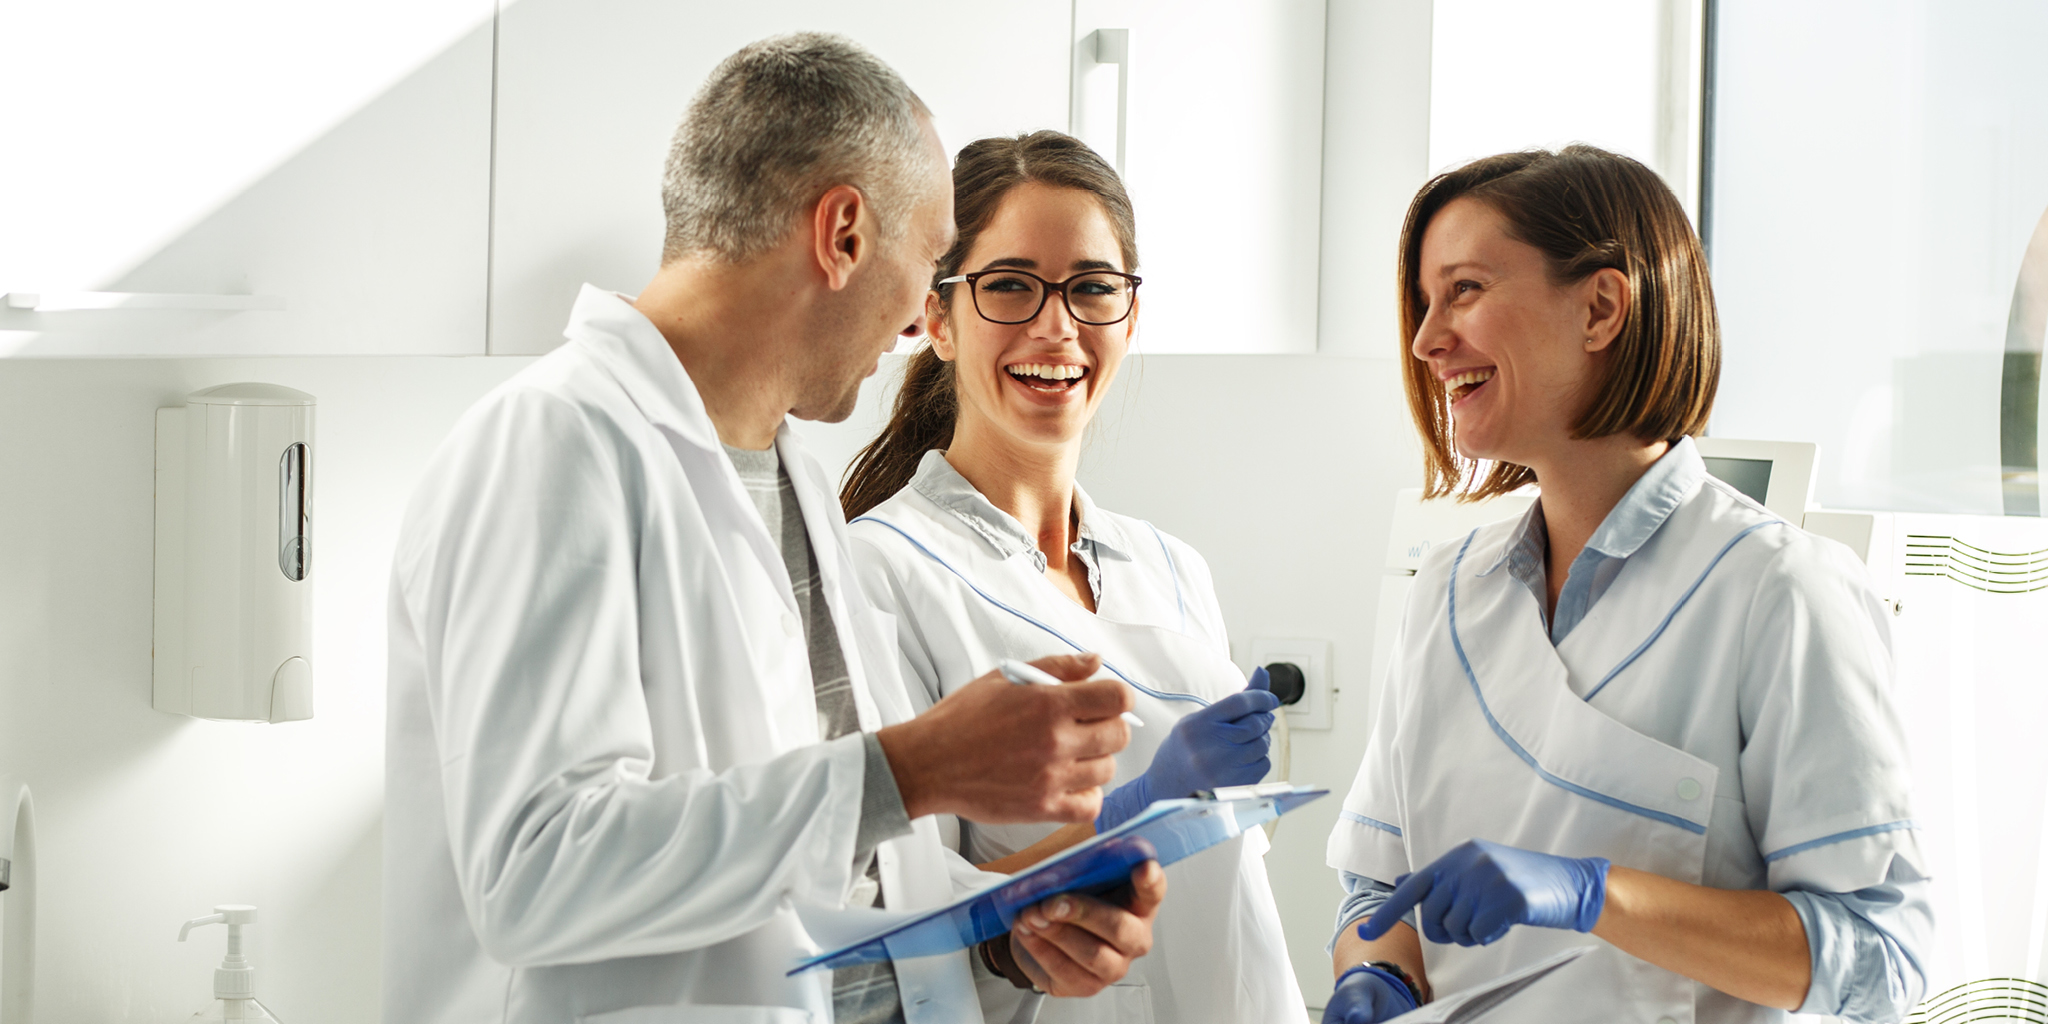 Mitarbeiter finden und glücklich machen – Bedeutung von employer branding und benefits für Arzt- und Zahnarztpraxen